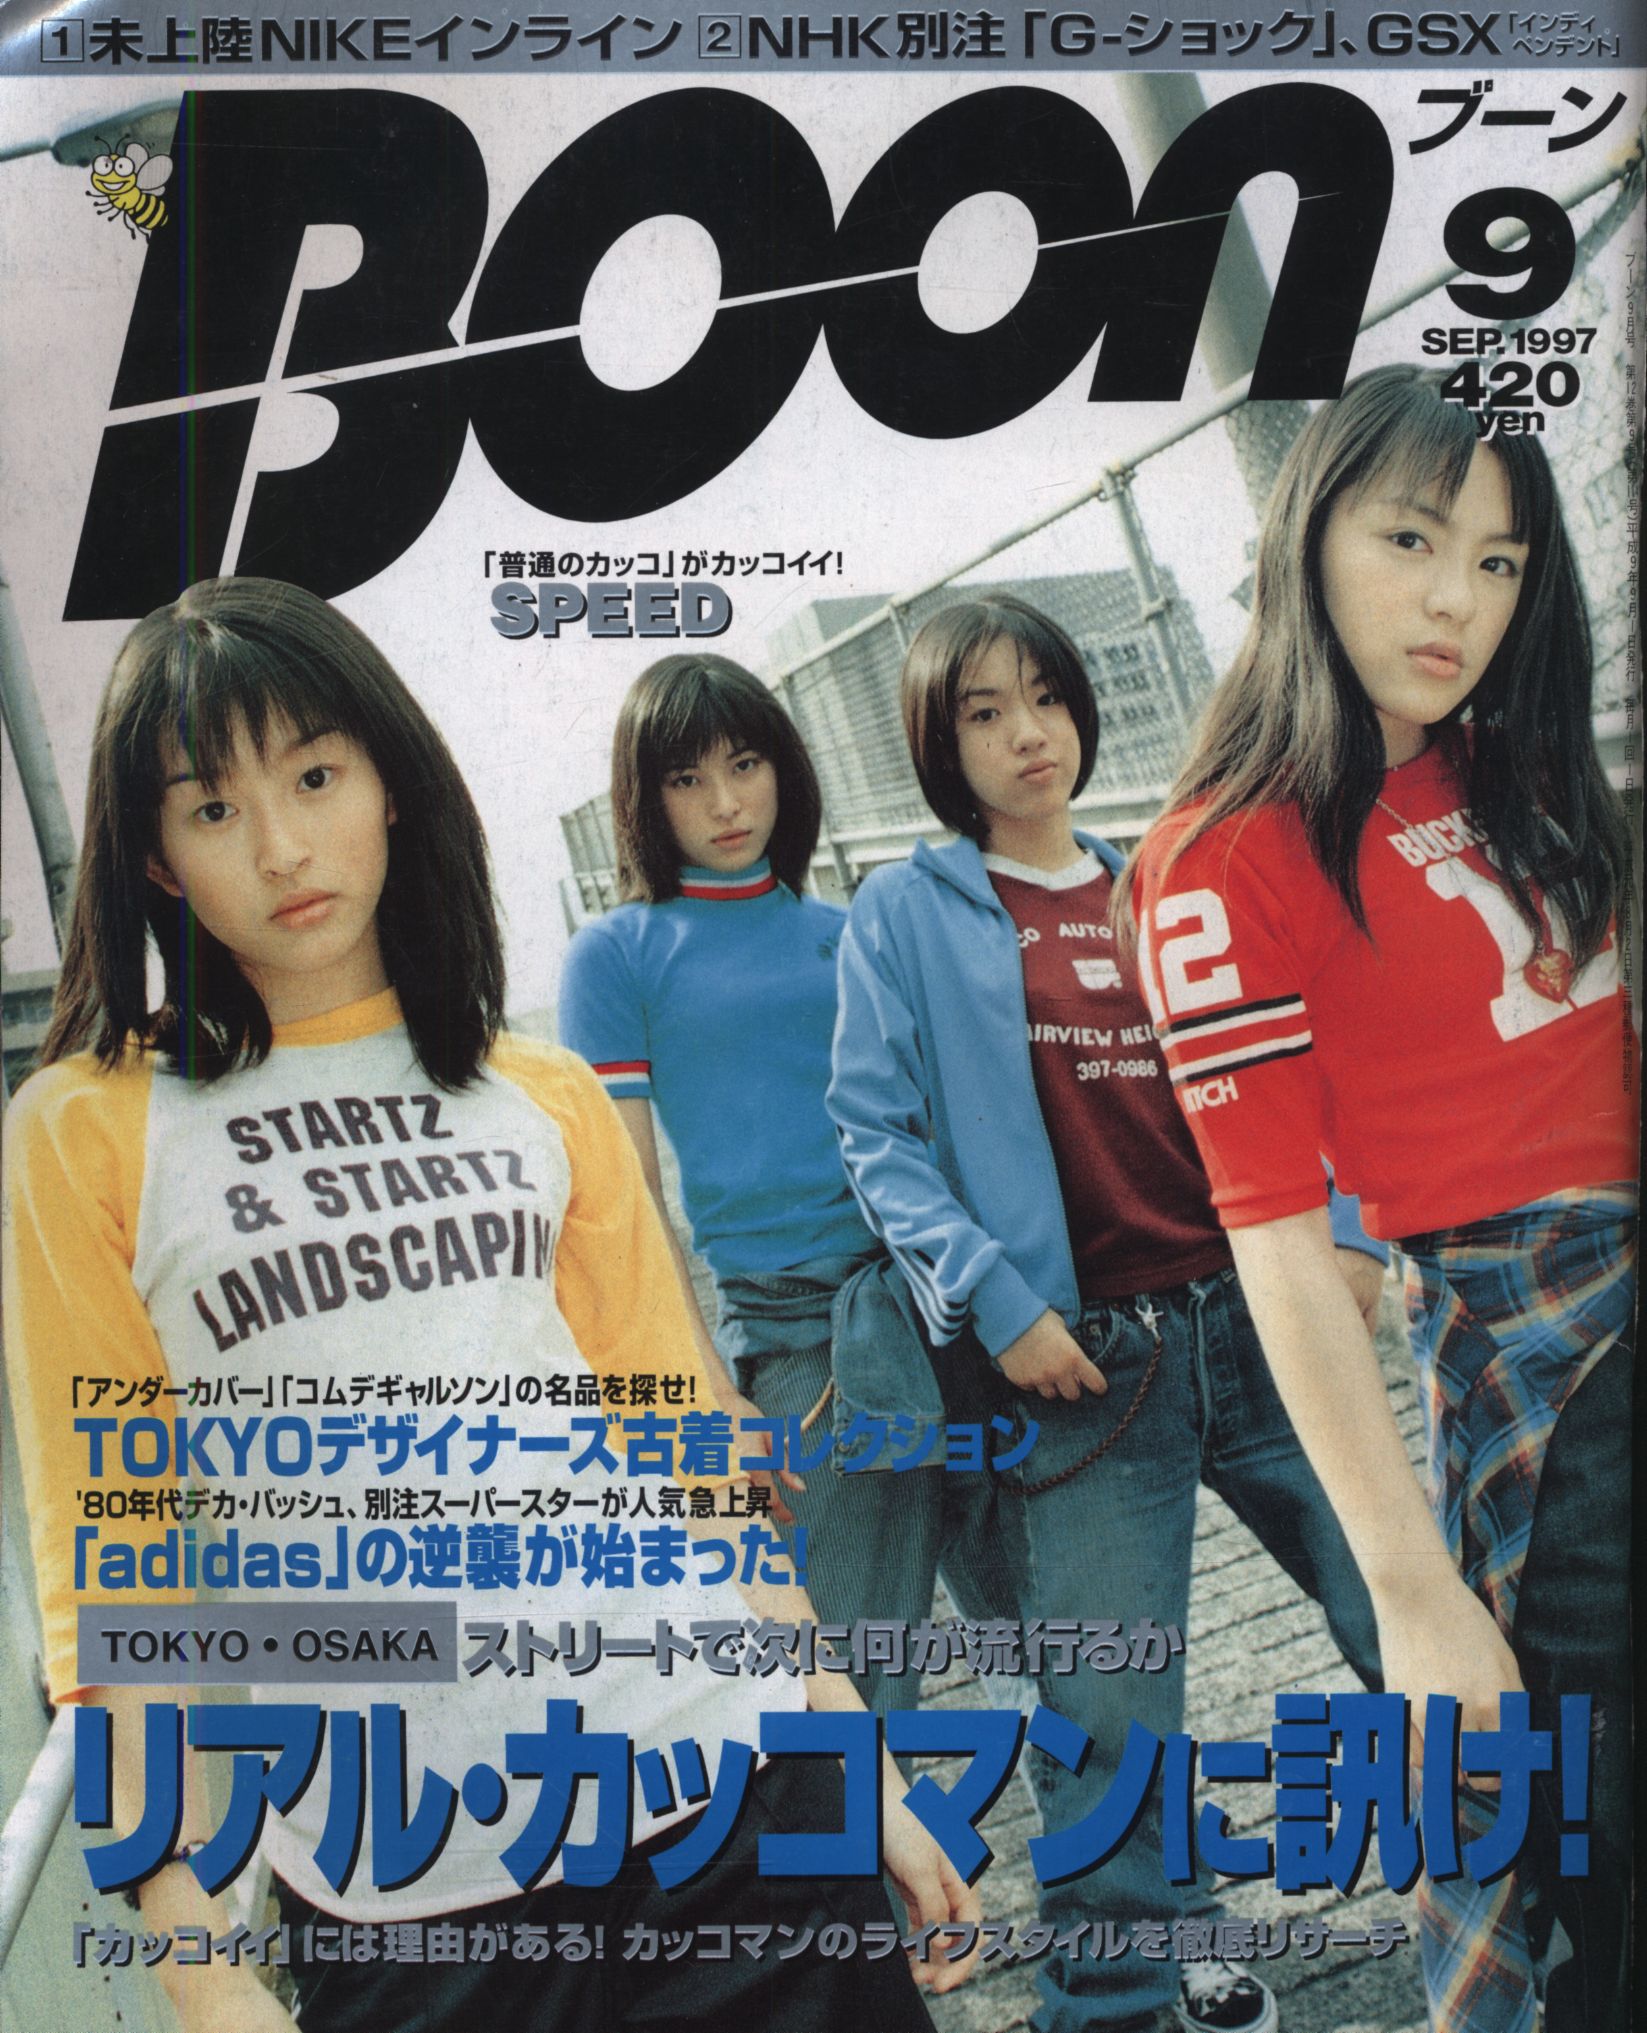 雑誌雑誌 Boon 1997年セットお正月セール